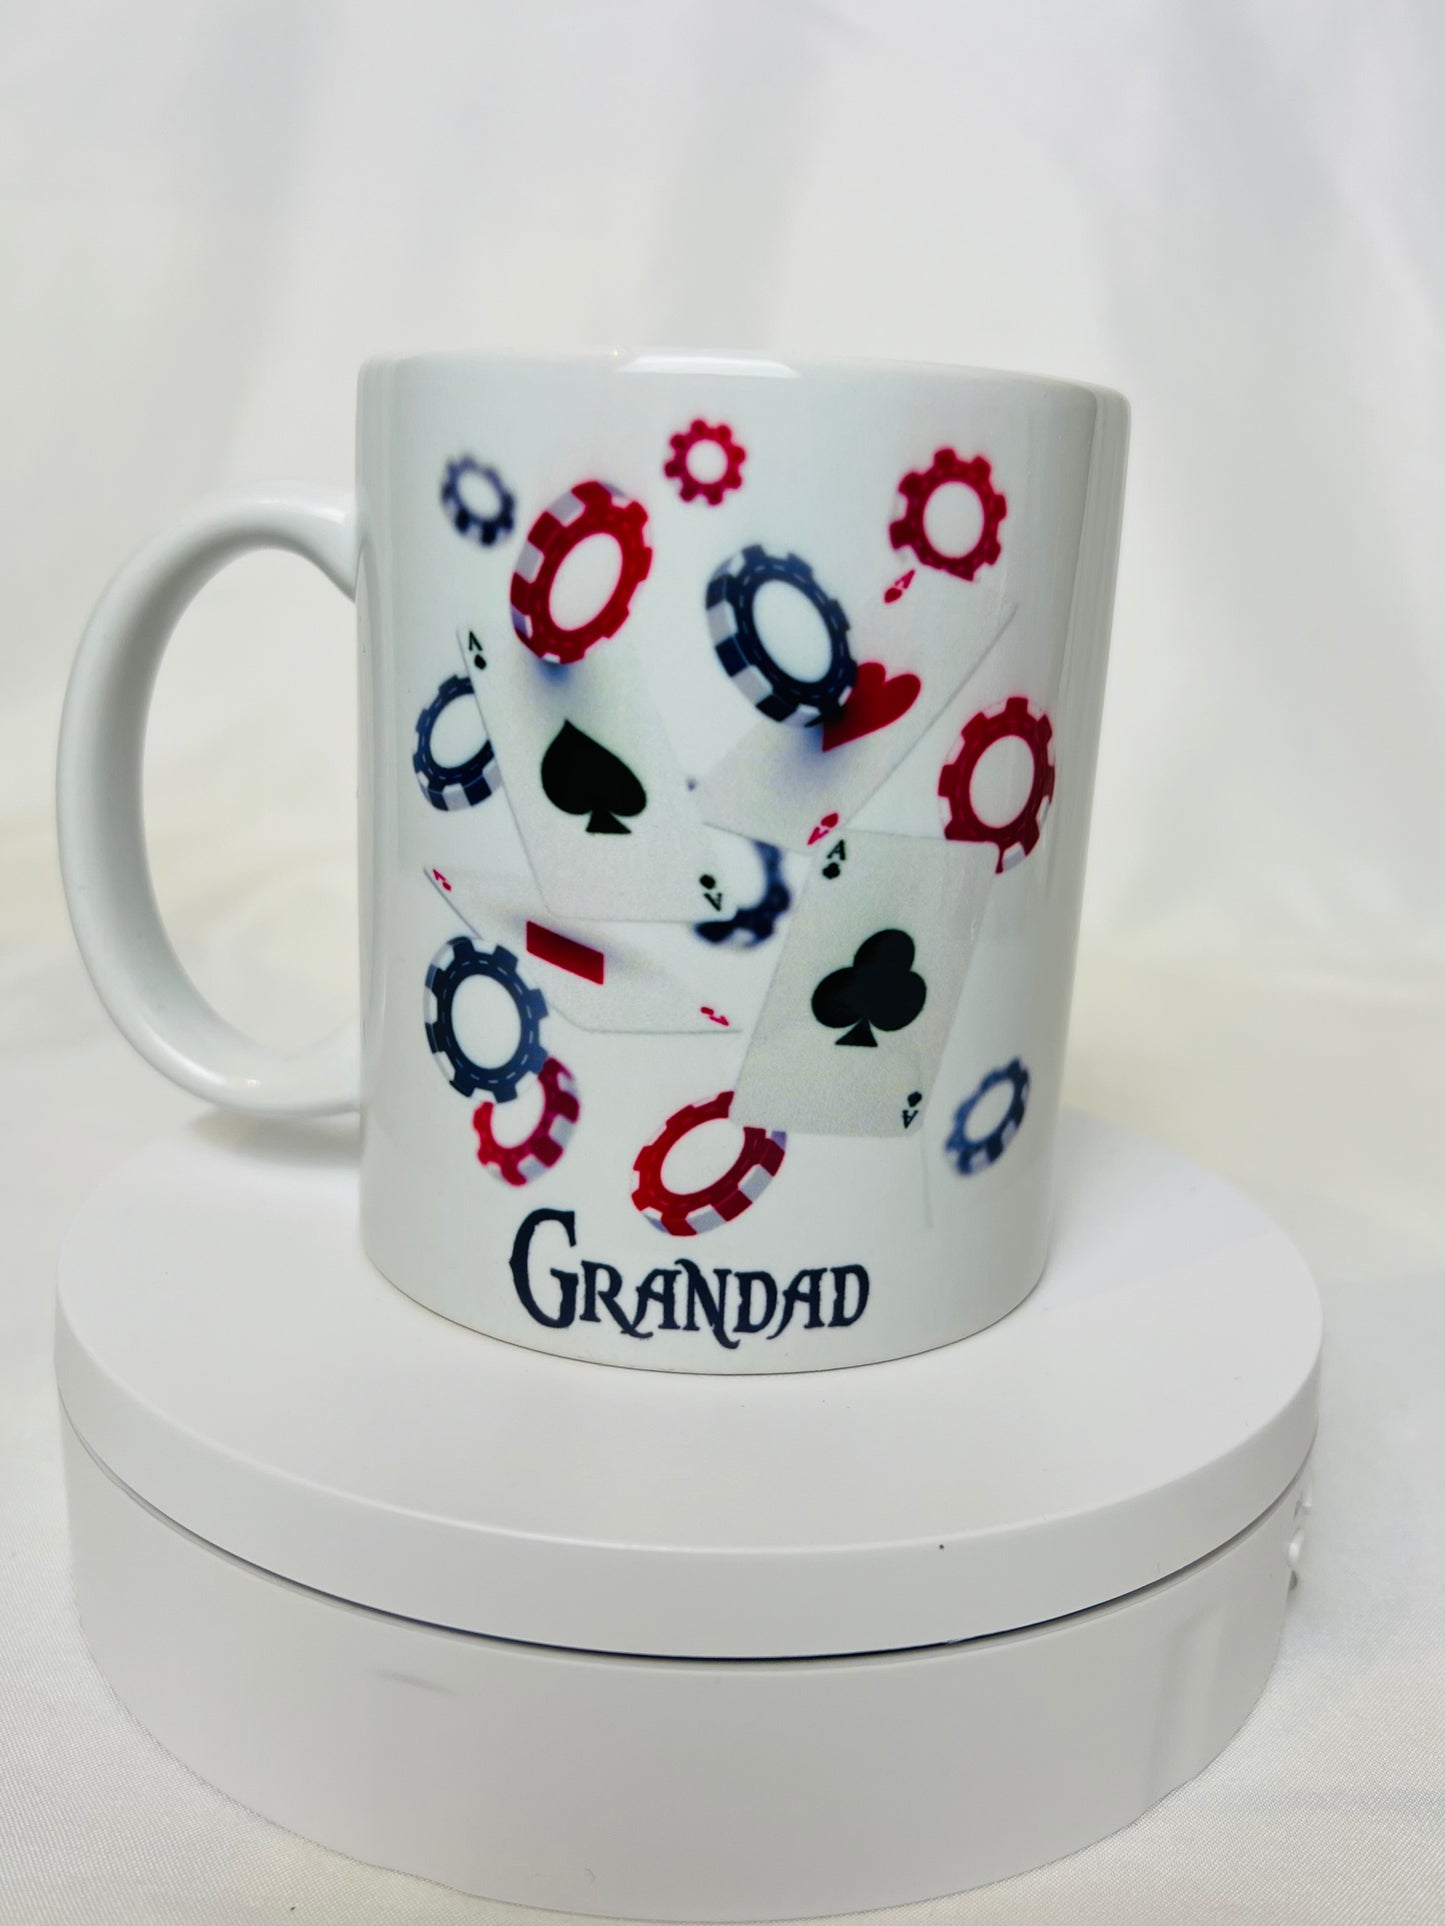 Custom made mug